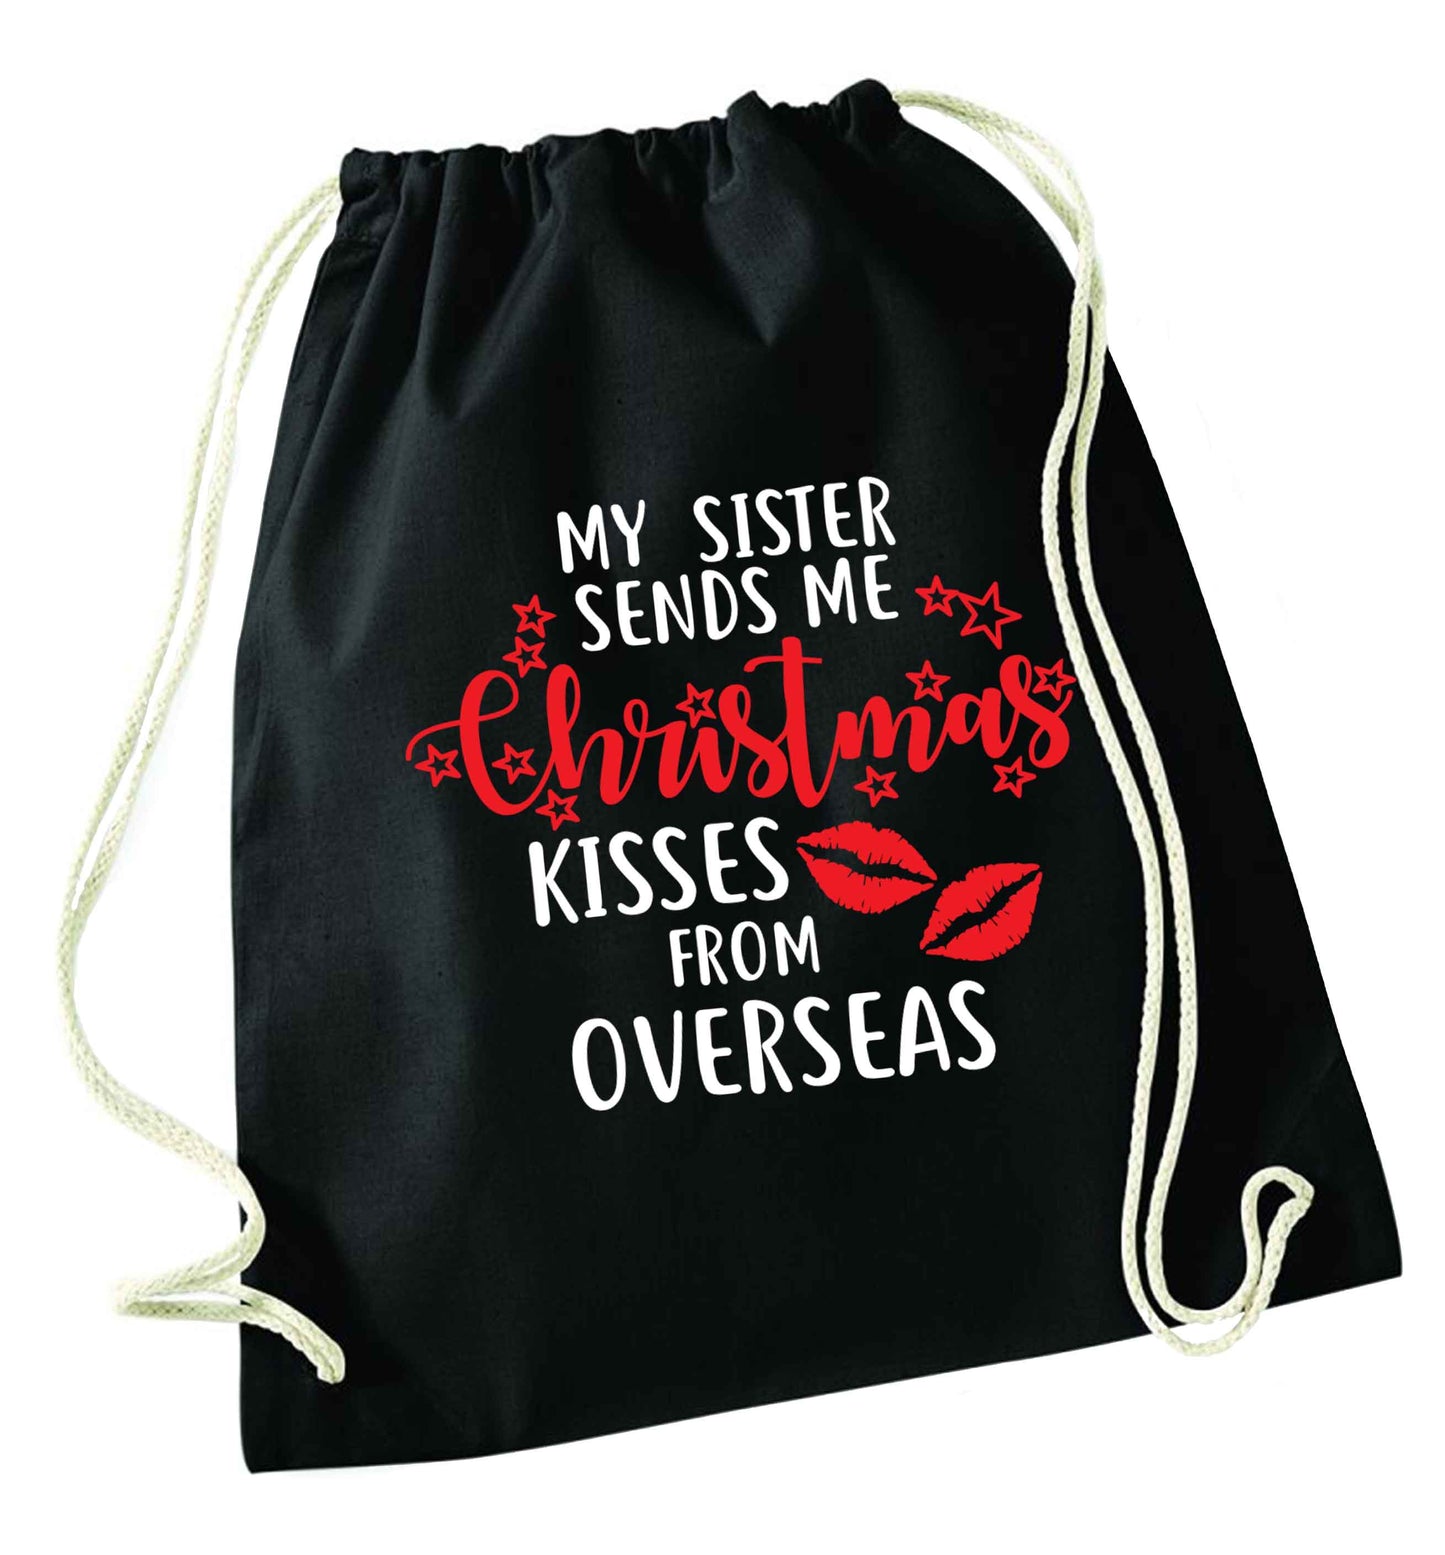 Grandad Christmas Kisses Overseas black drawstring bag